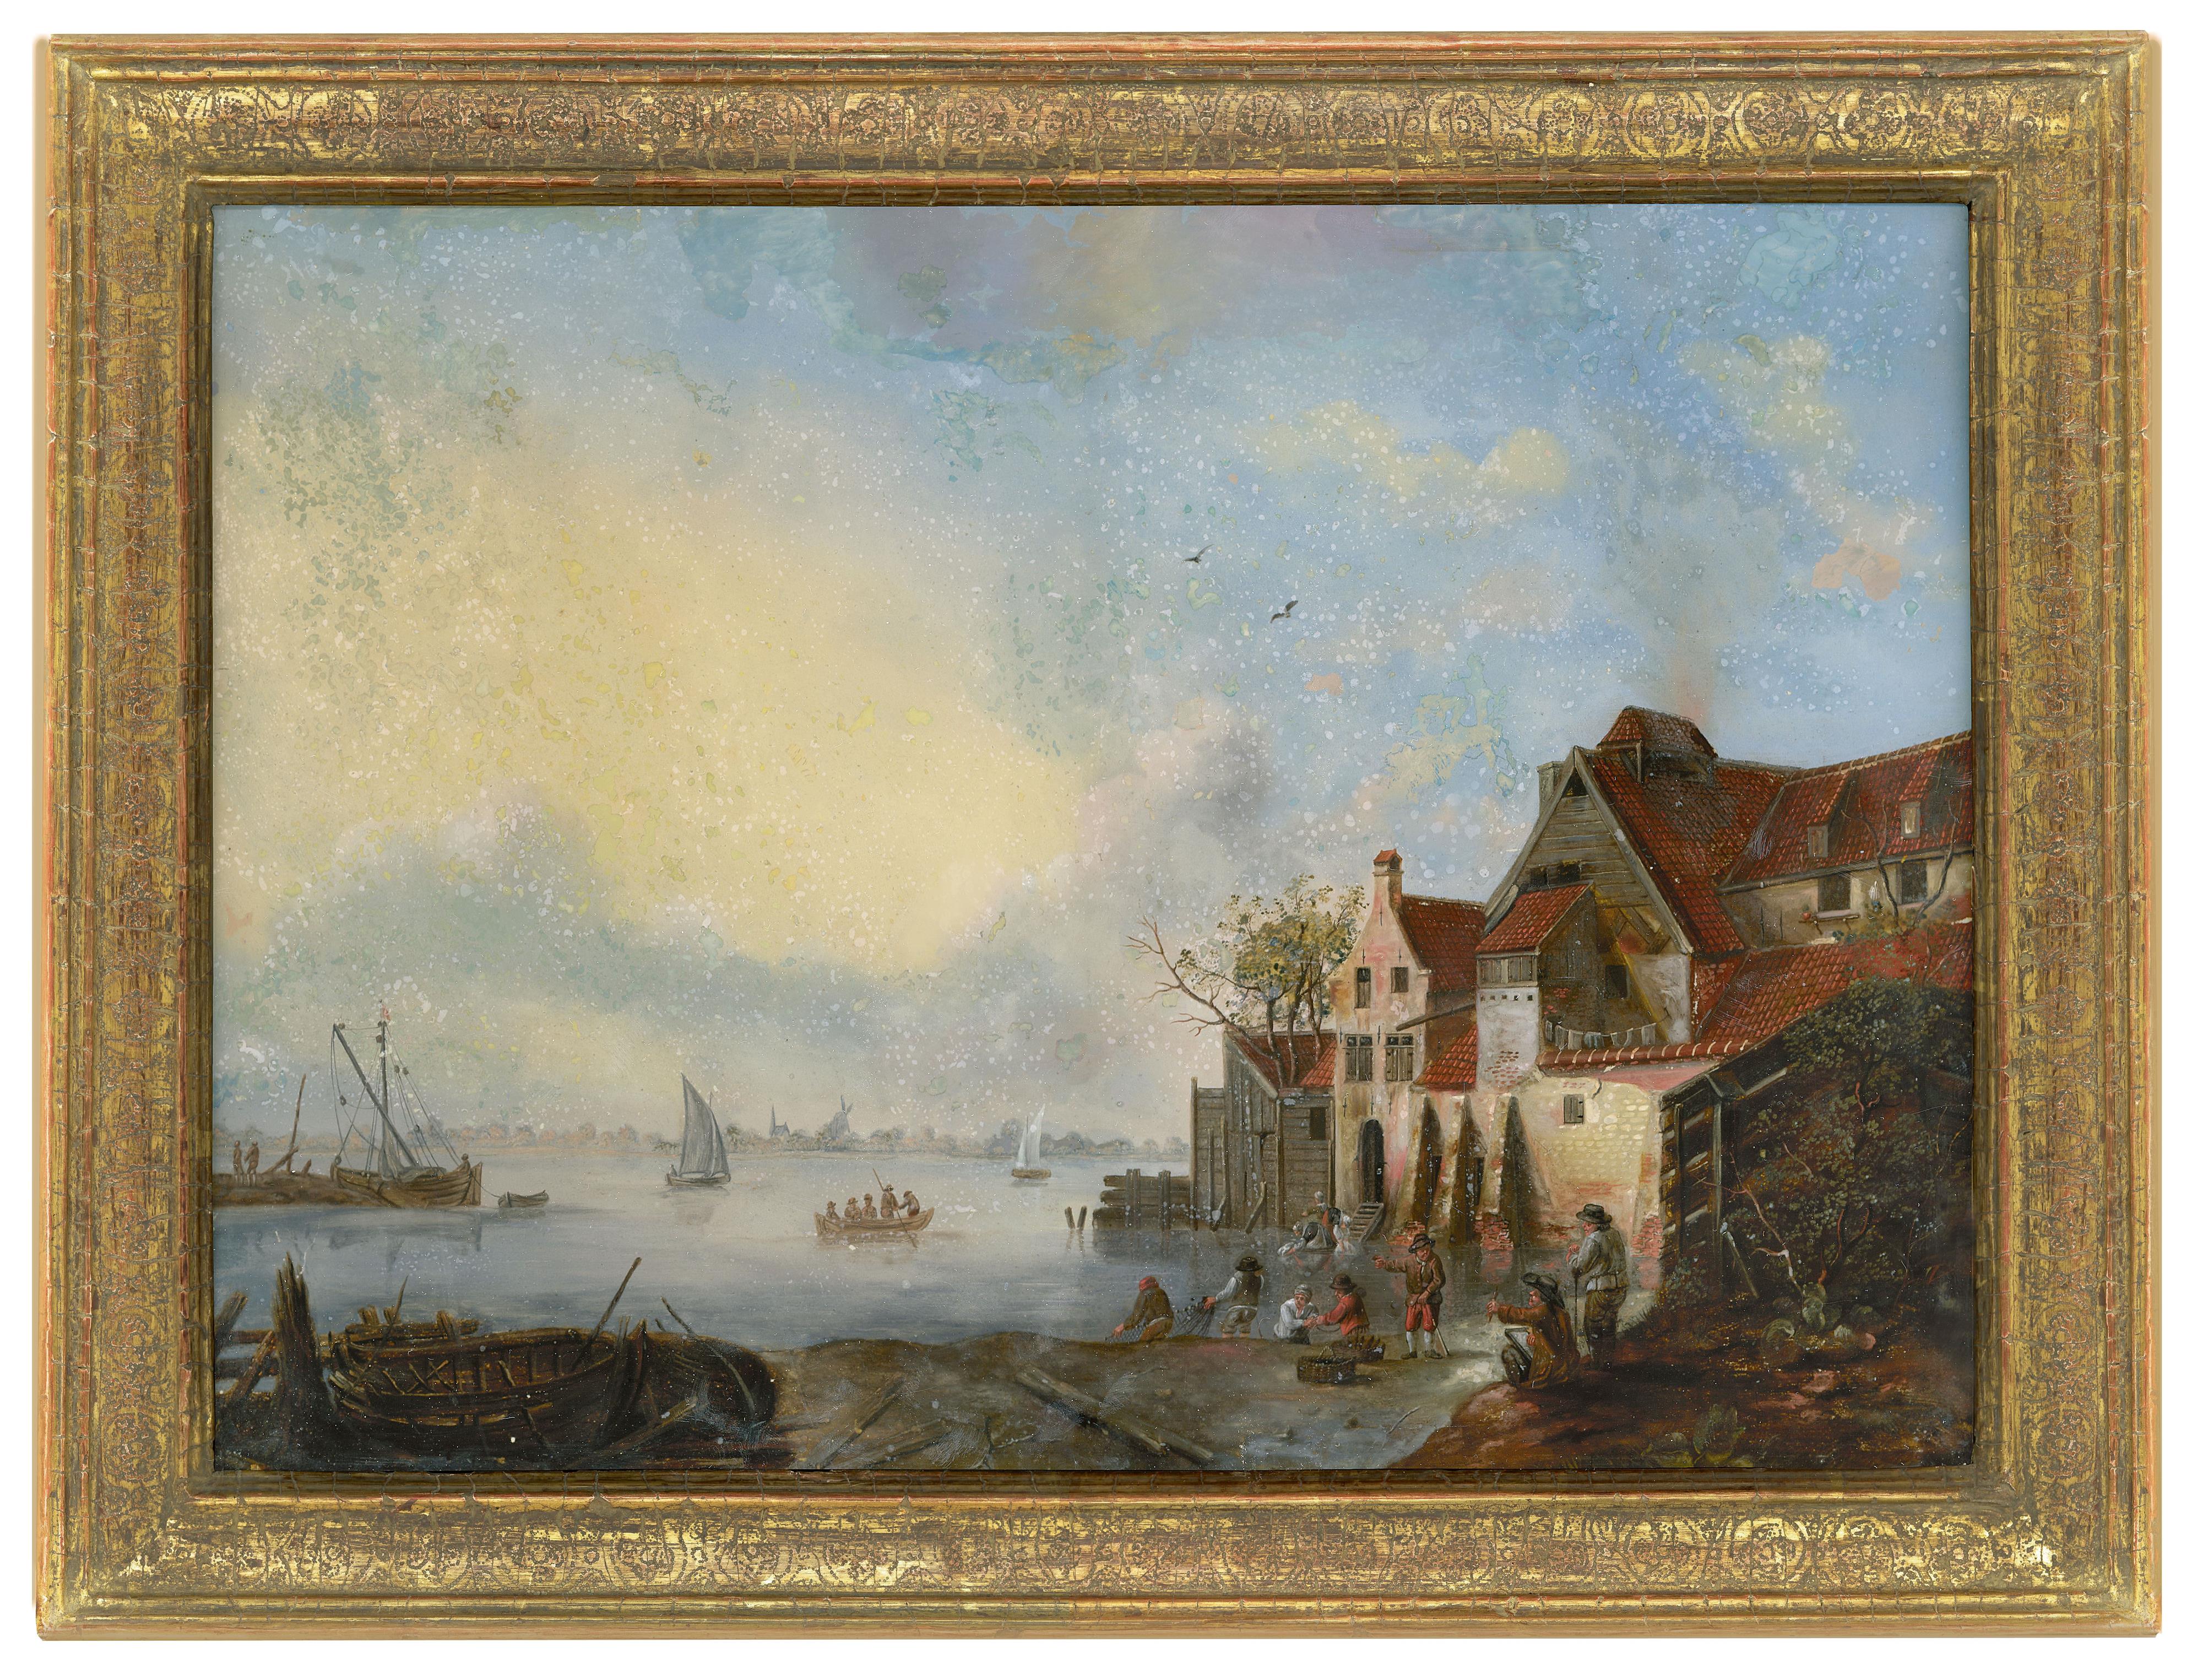 Ansicht einer niederländischen Stadt am Wasser
Niederlande, wohl nach einem Motiv von Aelbert Cuyp, Ende 17. / frühes 18. Jh. - image-1